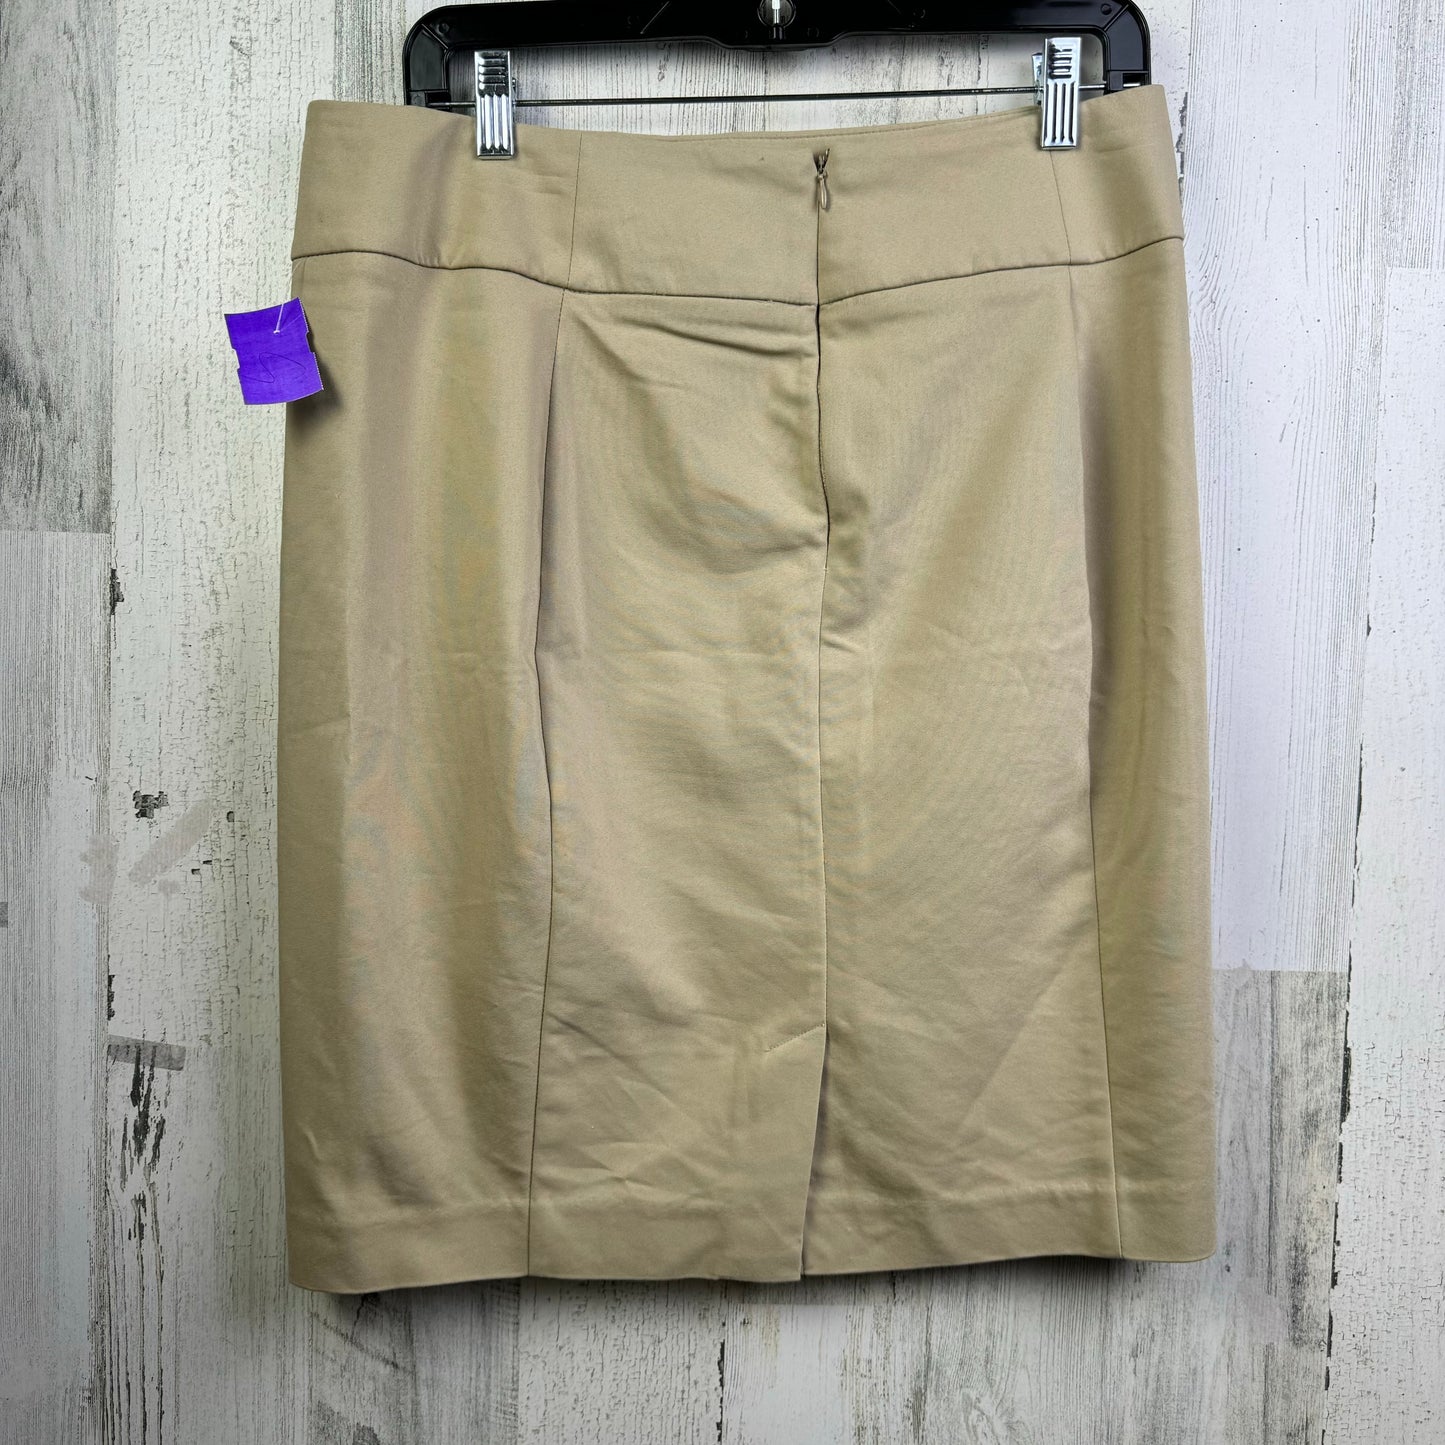 Tan Skirt Mini & Short Apt 9, Size 8